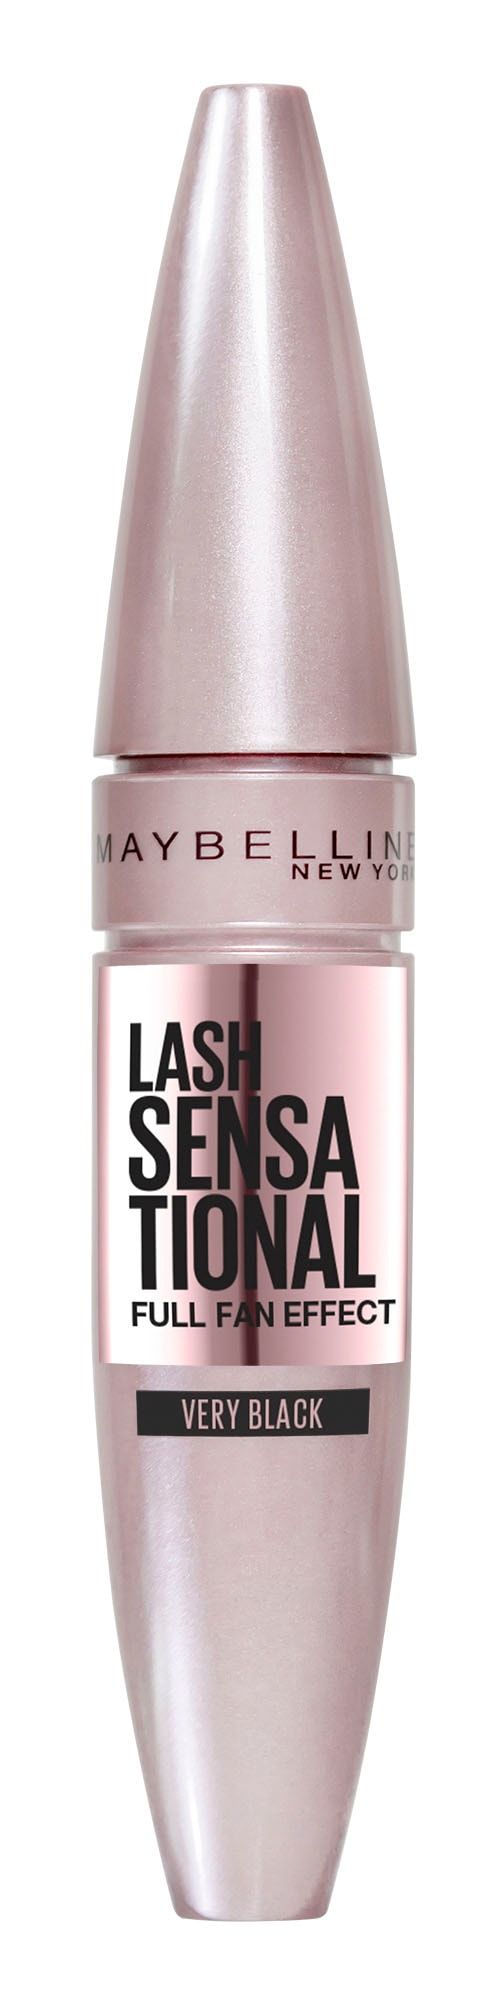 MAYBELLINE NEW YORK Mascara »Maybelline New York Lash Sensational Mascara«,  Wimperntusche online kaufen